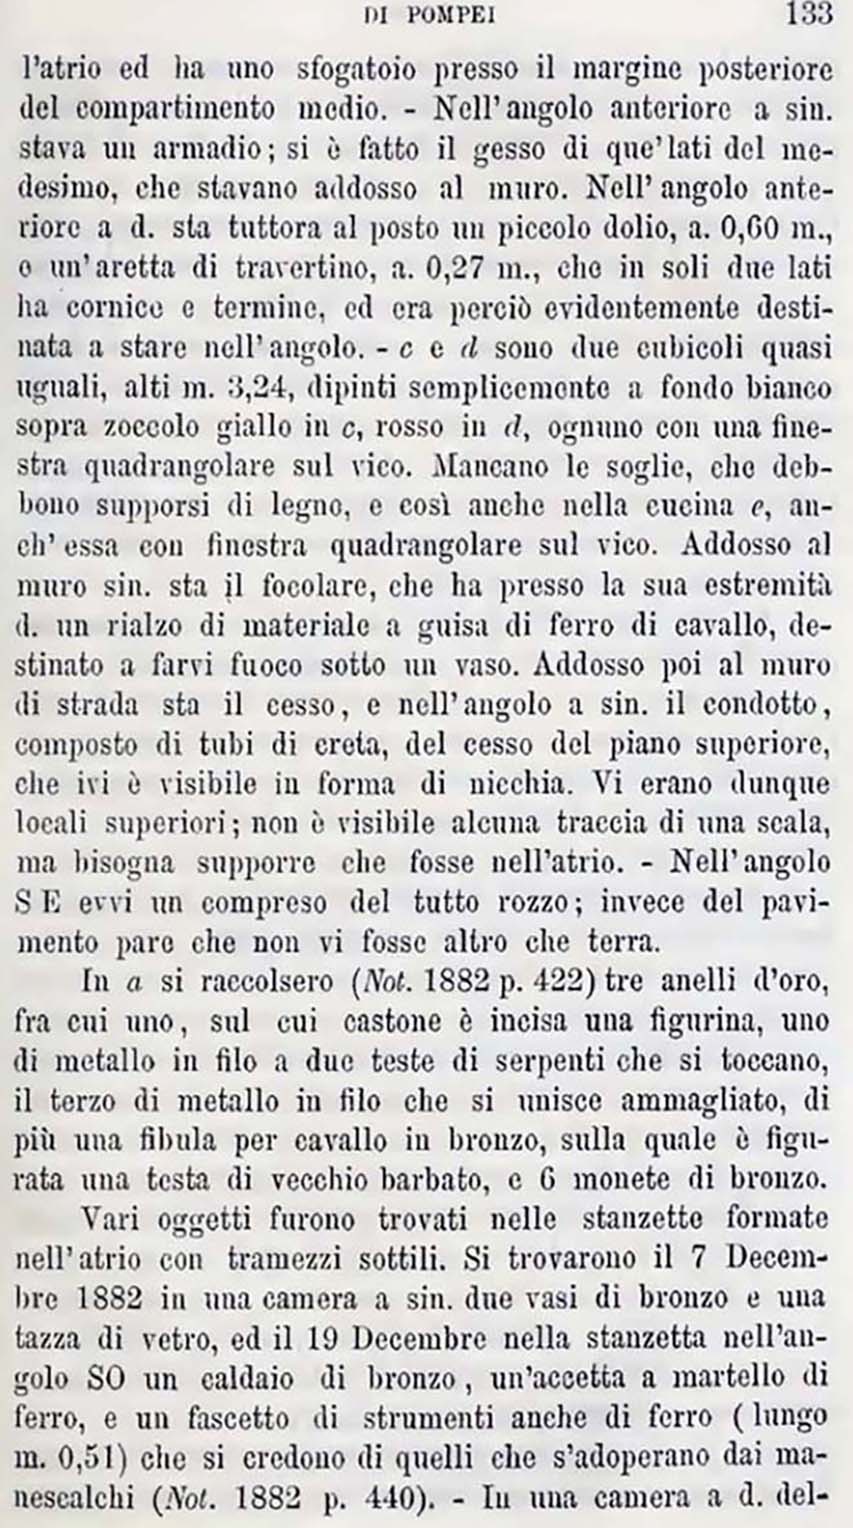 Sogliano, Notizie degli Scavi, December (1882), p.130;